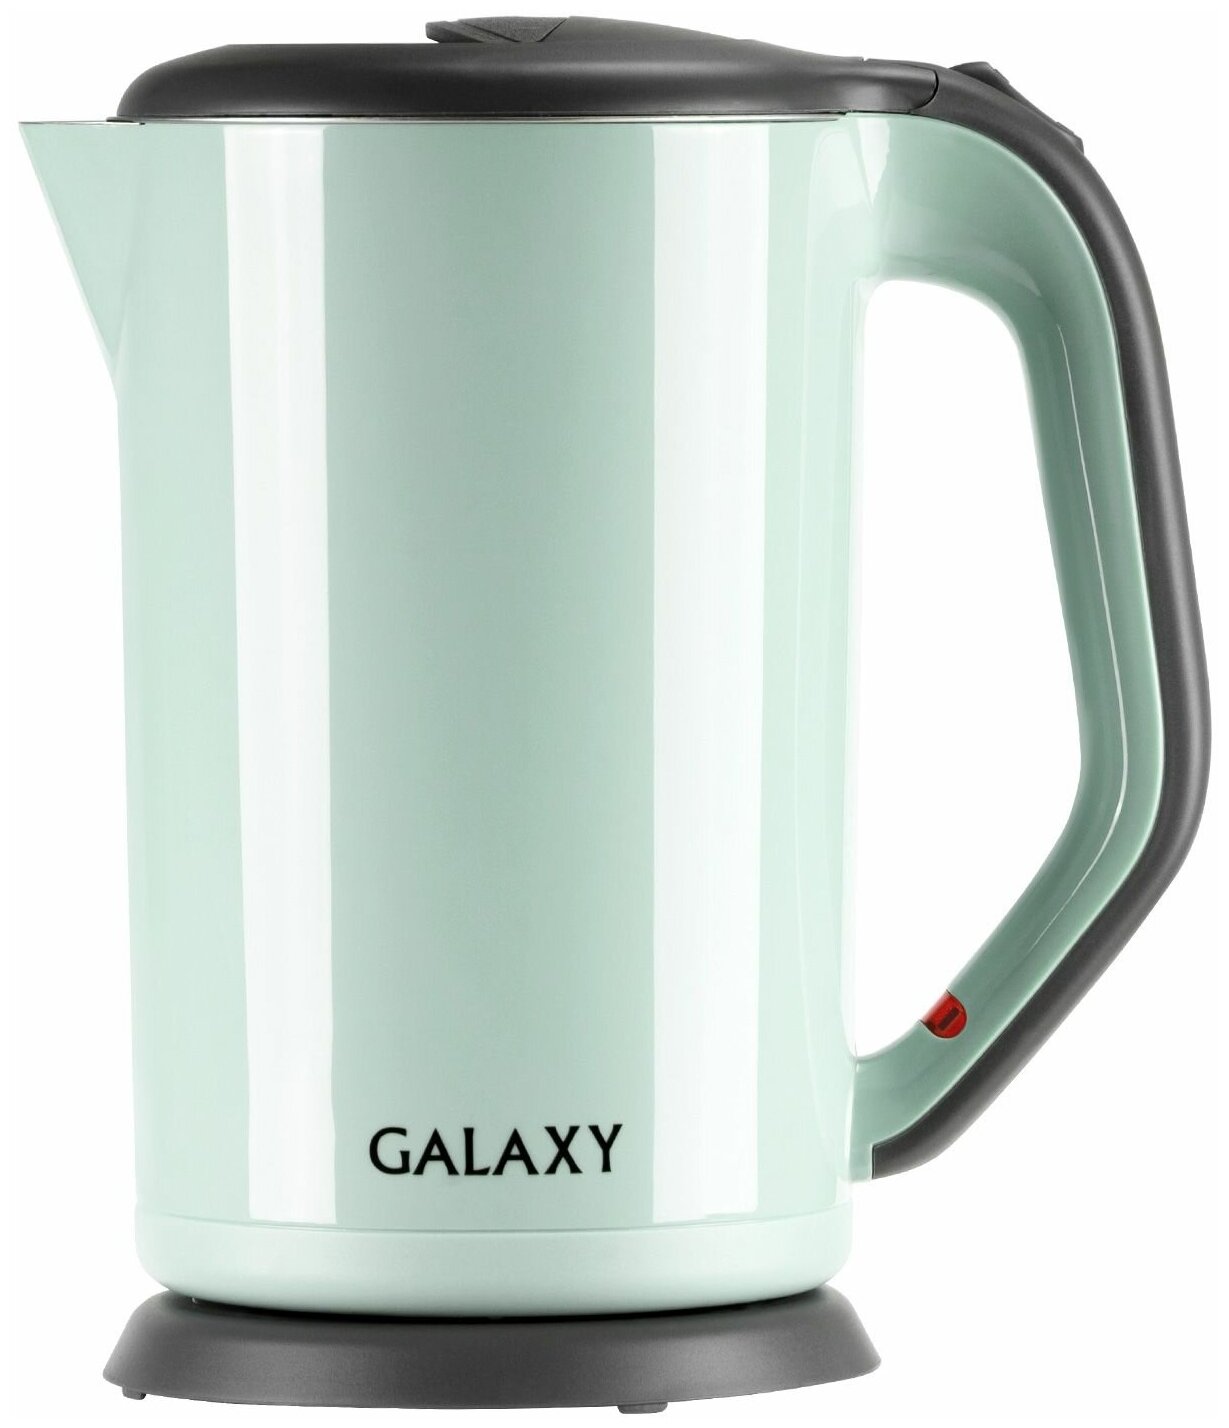 Чайник электрический Galaxy GL 0330 пластик колба металл 1.7 л 2000 Вт салатовый